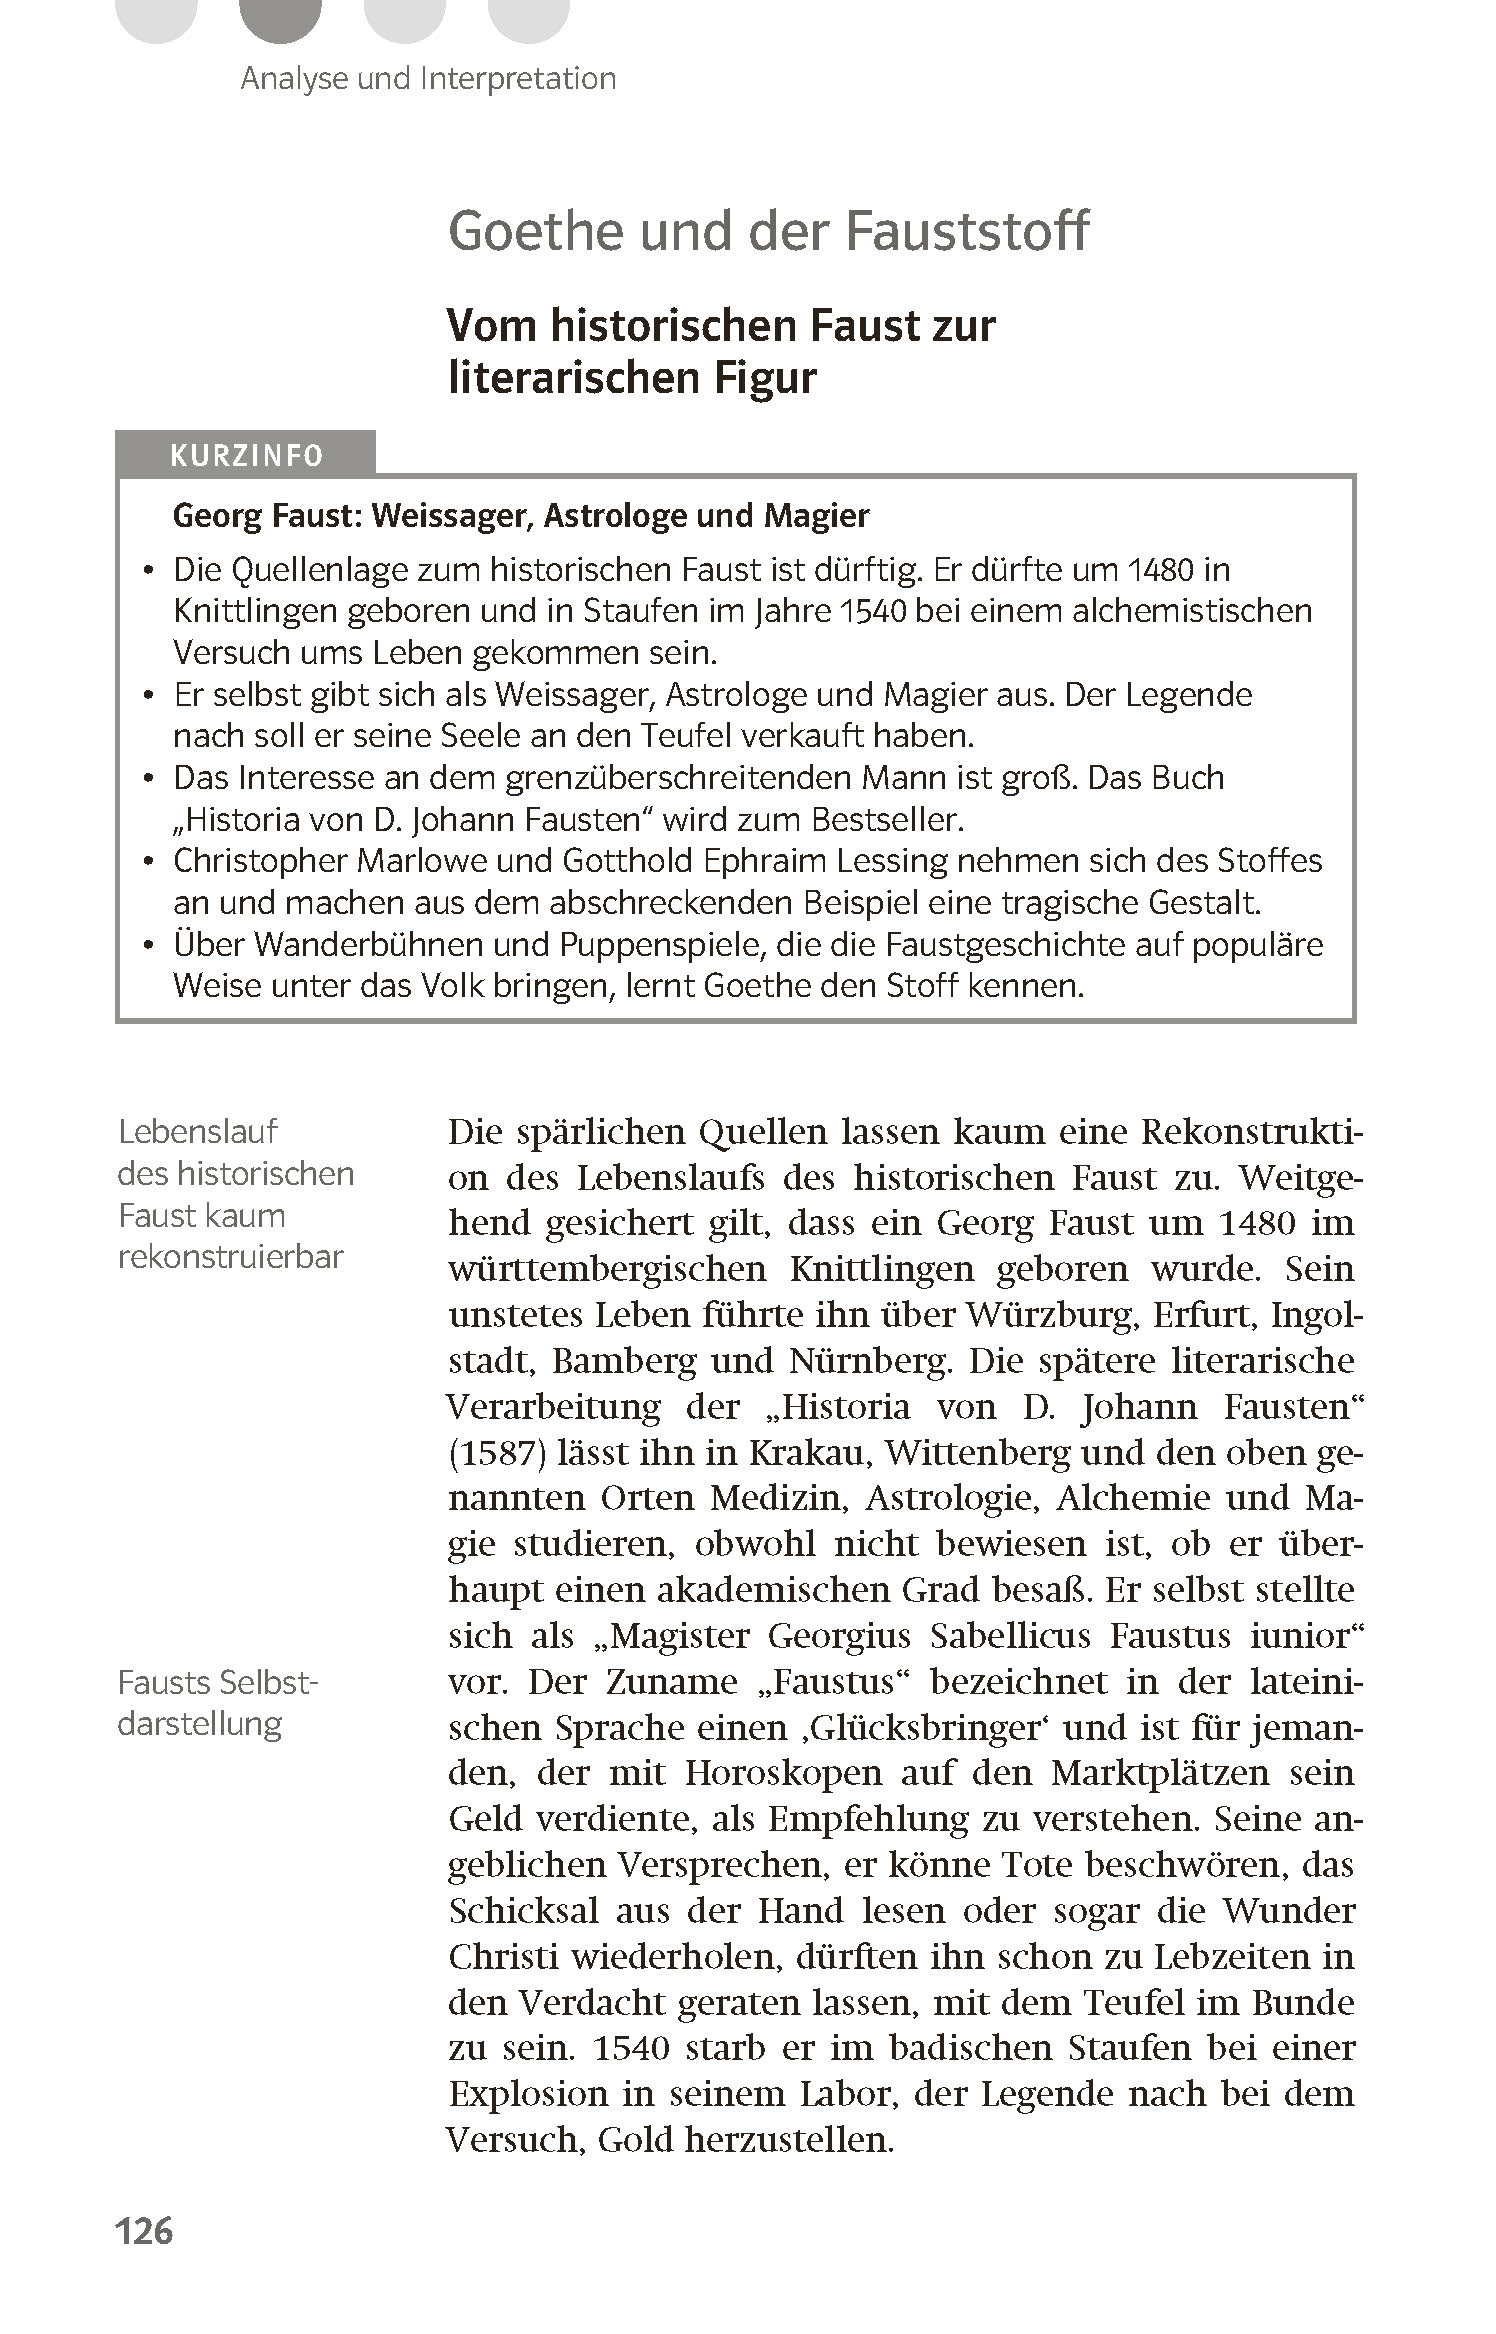 Klett Lektürehilfen Johann Wolfgang Goethe, Faust Der Tragödie Erster Teil